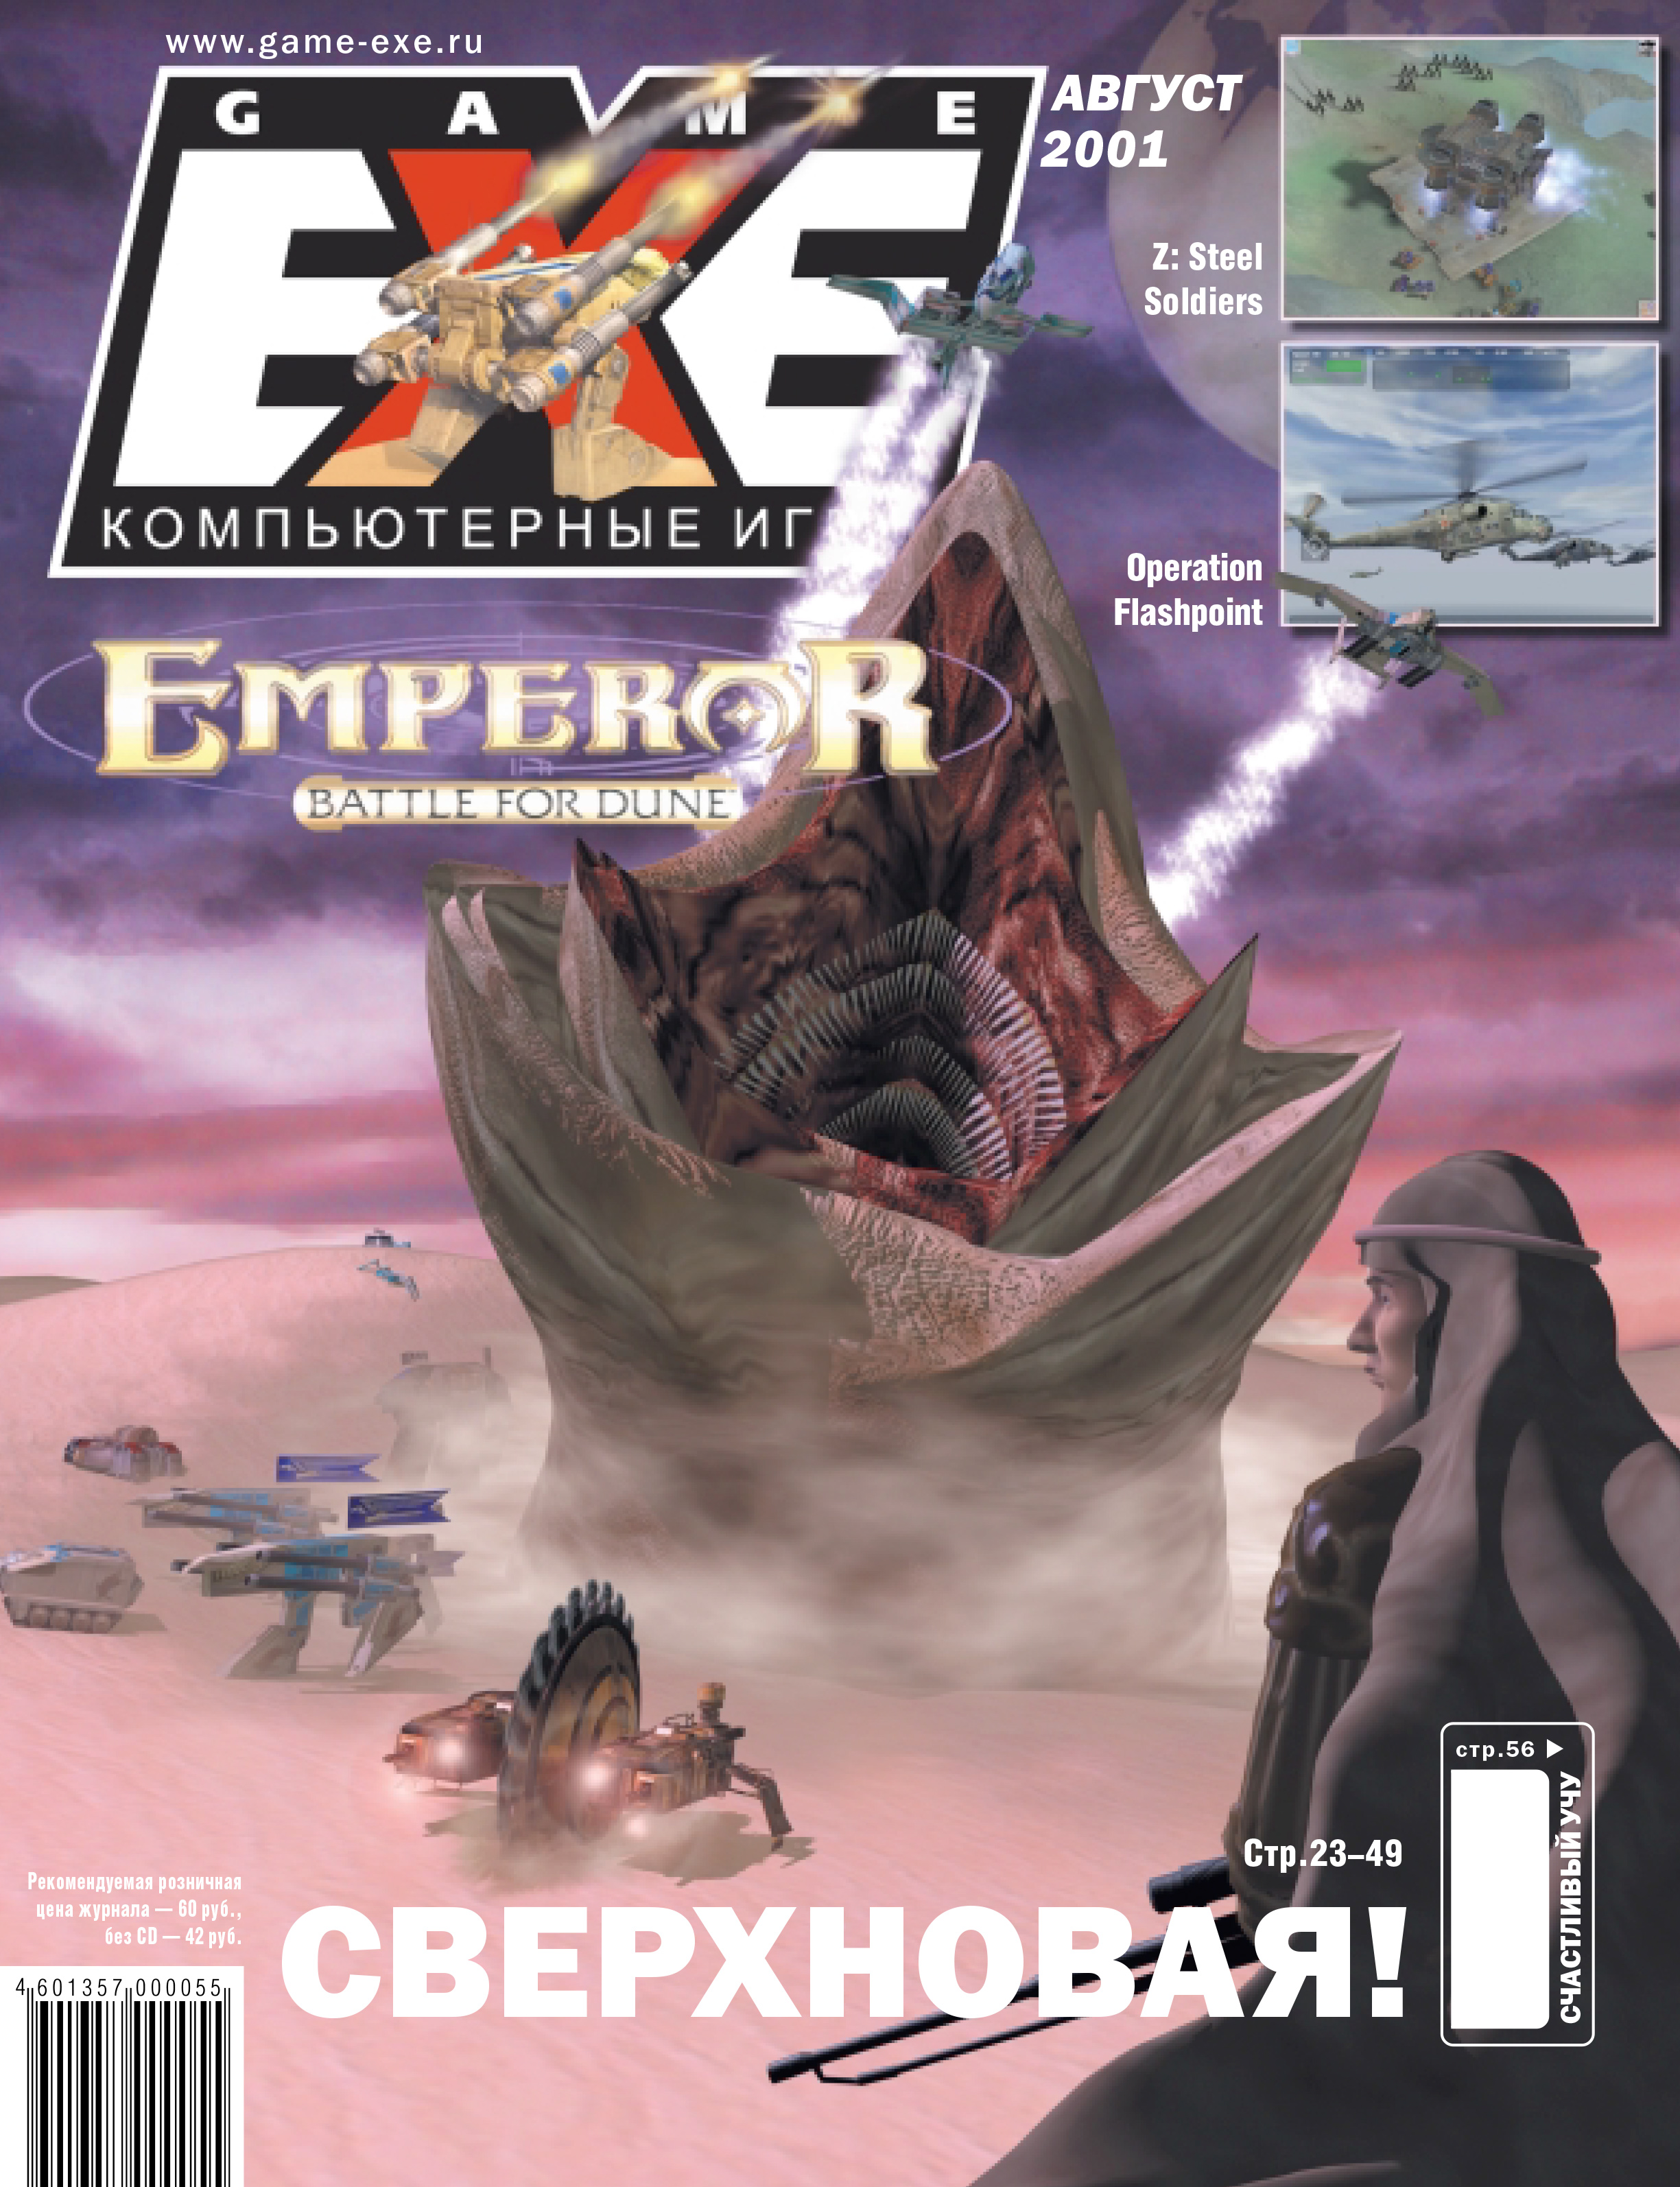 Download game exe. Game.exe. Exe журнал. Game.exe обложки. Game exe журнал 2004.